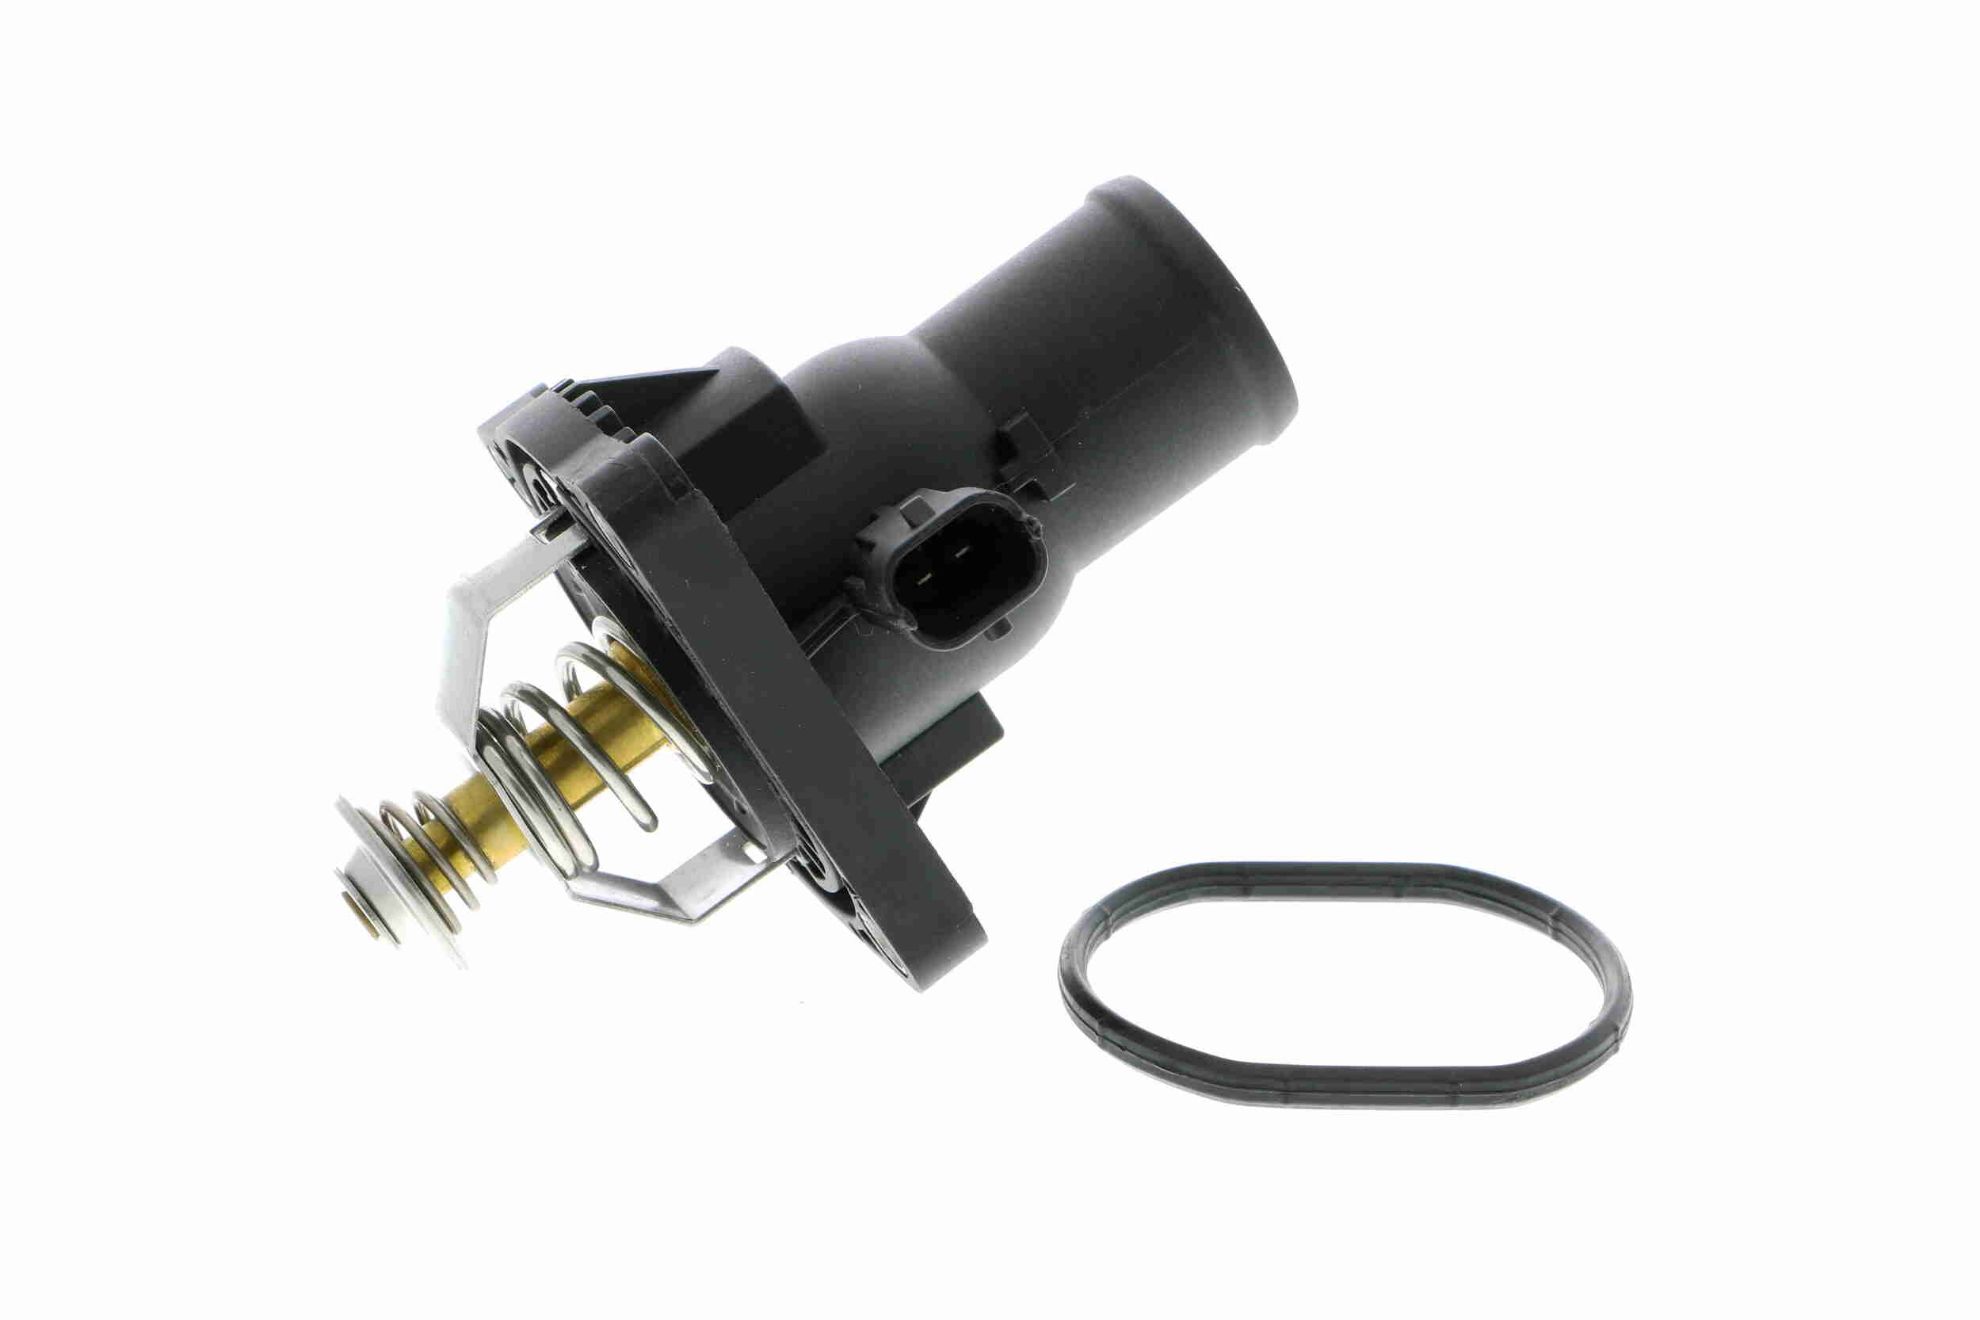 Obrázok Snímač tlaku výfukových plynov VEMO Q+, original equipment manufacturer quality V40720565